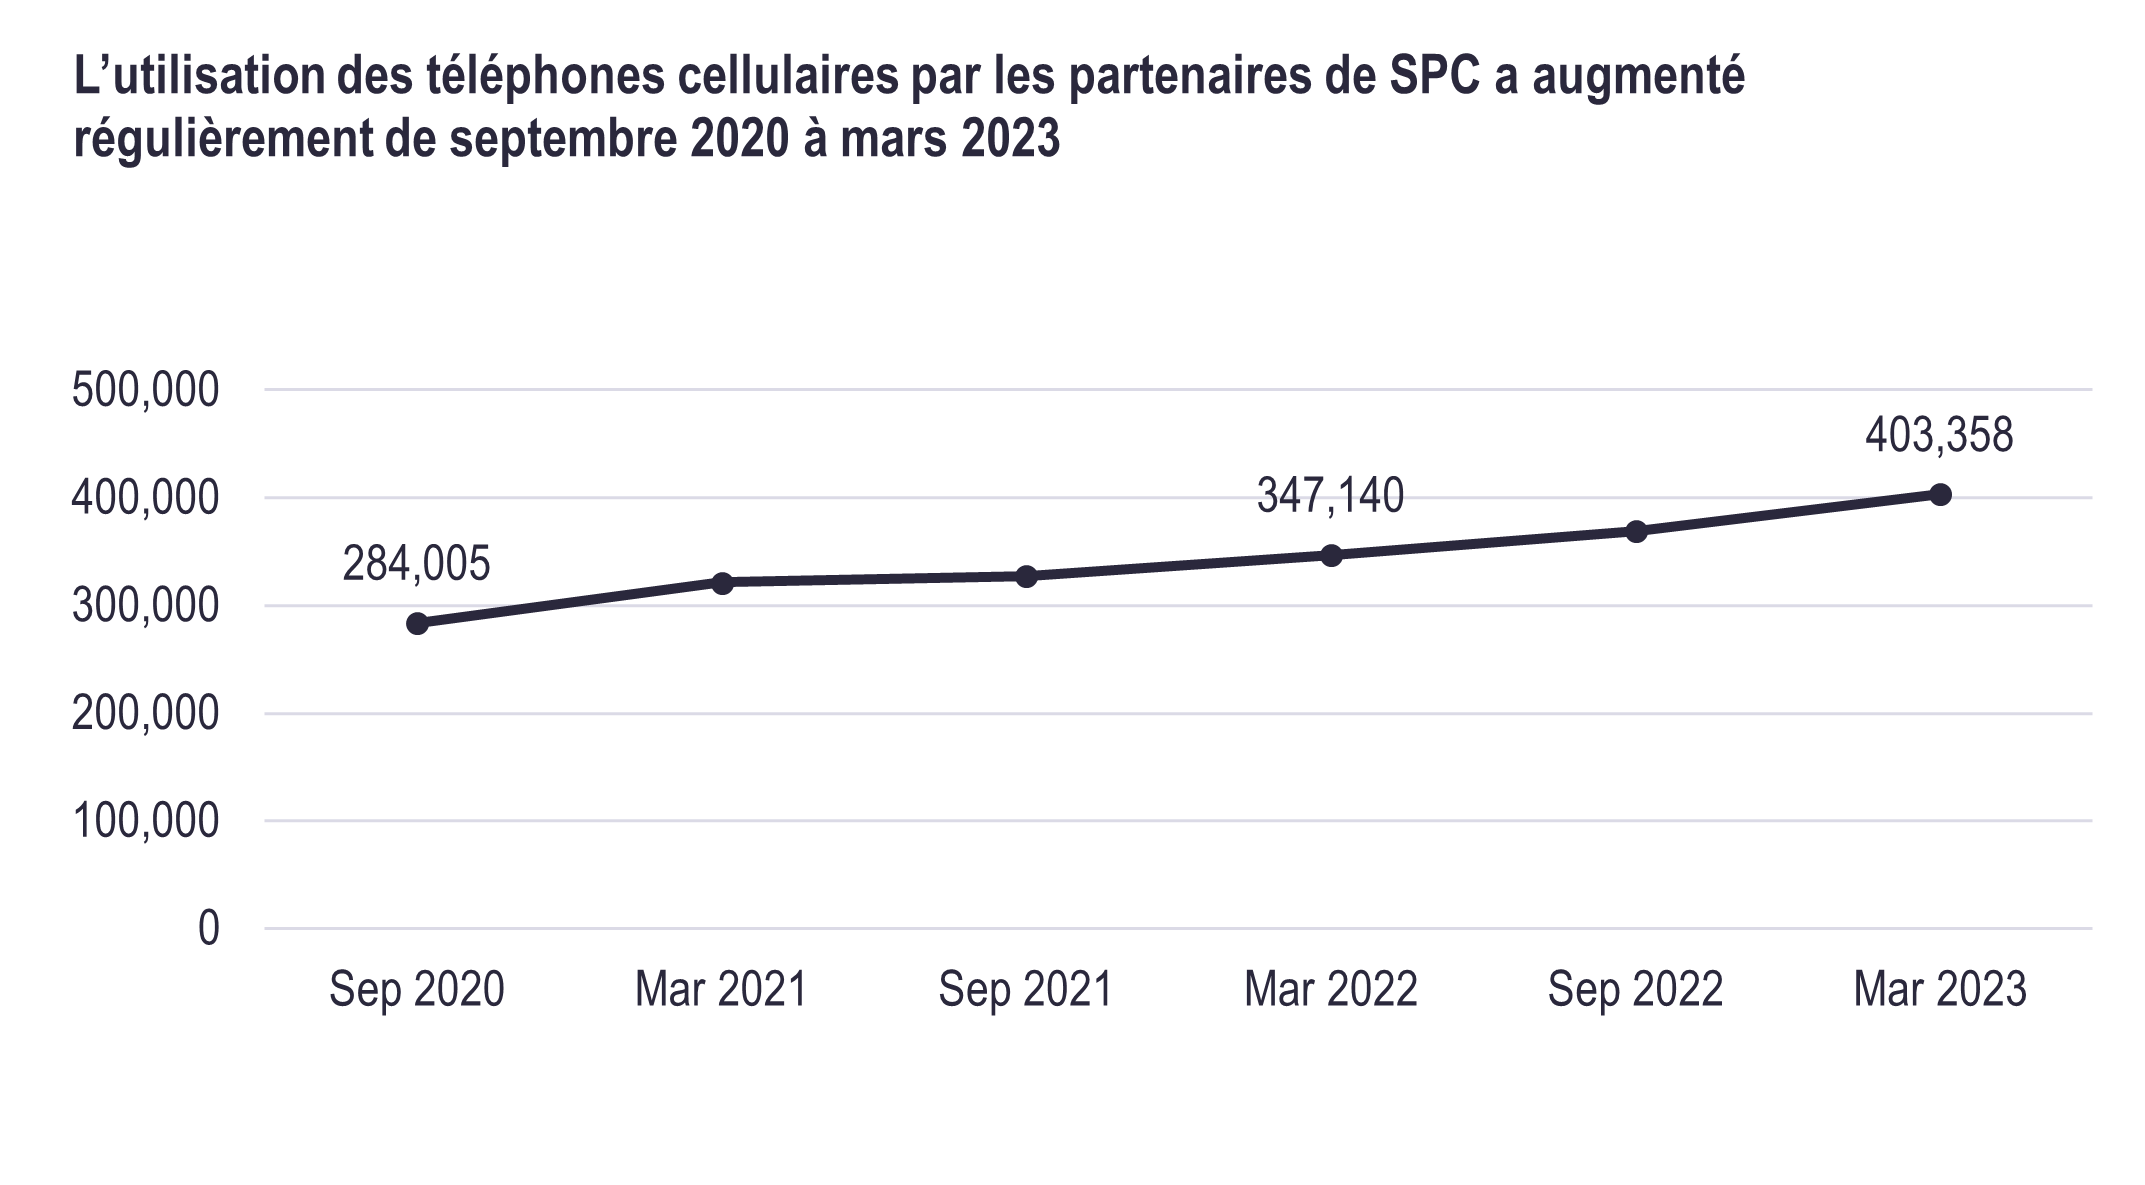 Diagramme. L’utilisation des téléphones cellulaires par les partenaires de SPC a augmenté régulièrement de septembre 2020 à mars 2023. Reportez-vous à la longue description suivante.